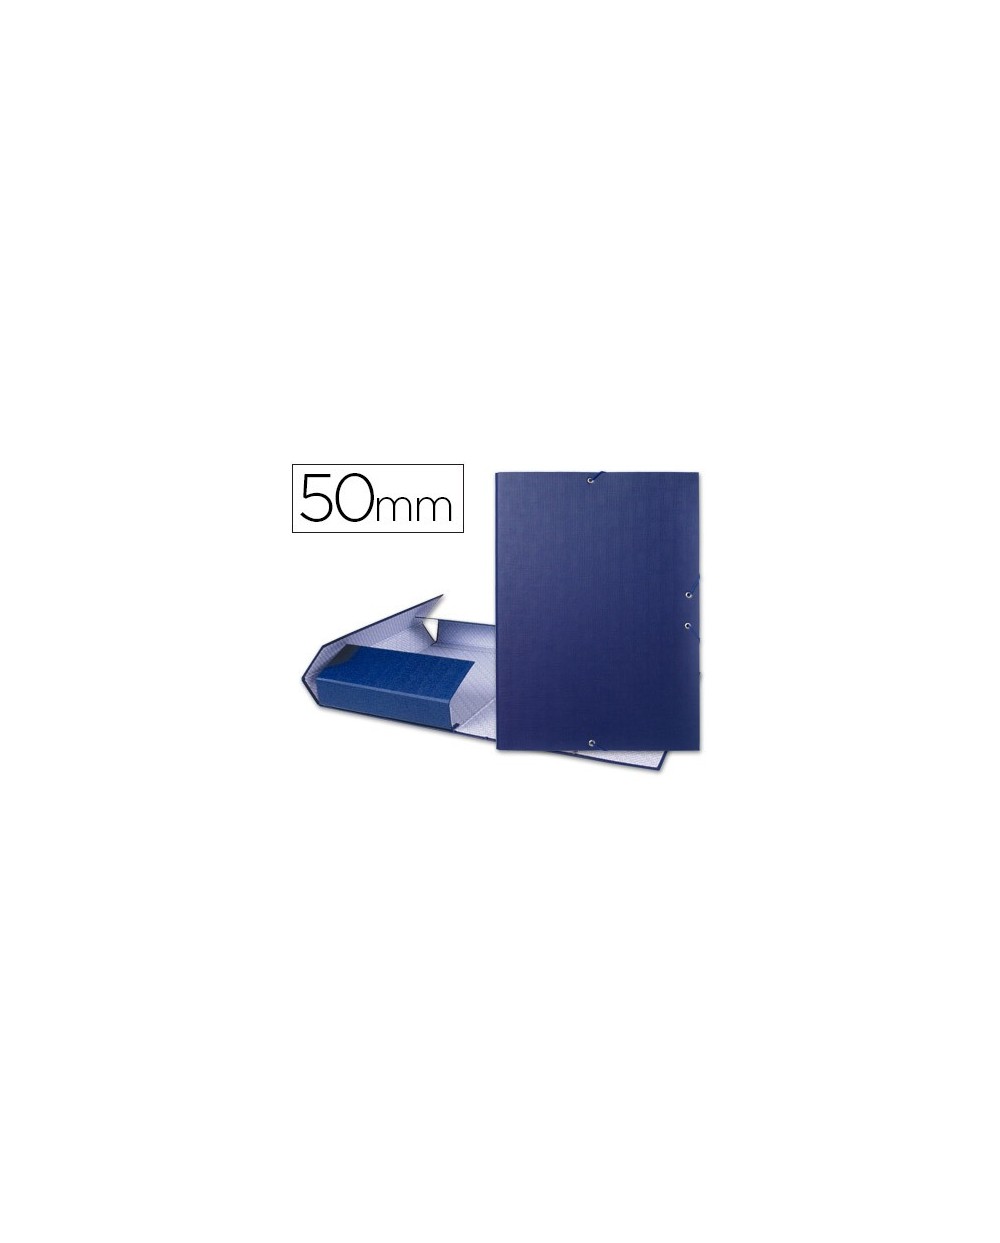 Carpeta proyectos liderpapel folio lomo 50mm carton forrado azul